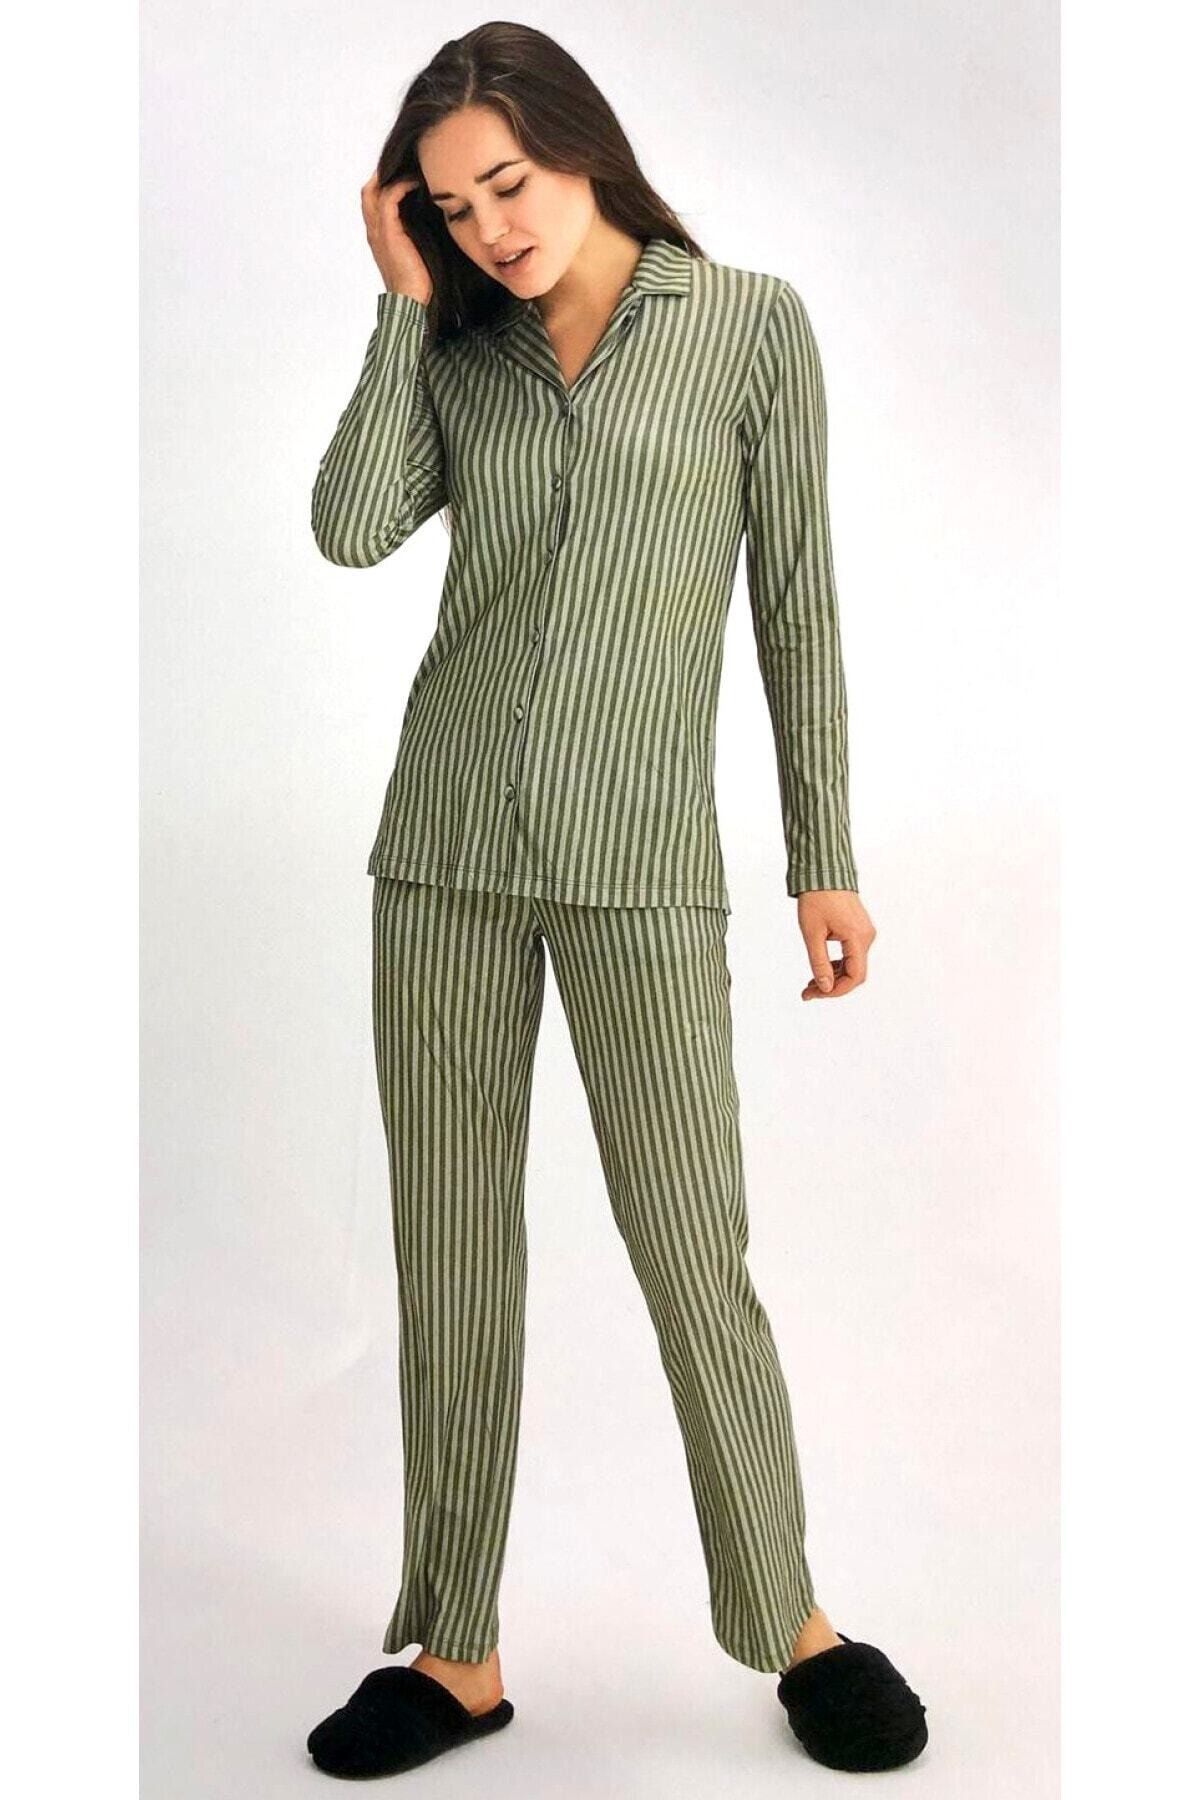 Eros Pijama Kadın Yeşil Çizgili Gömlek Pijama Takımı 27690